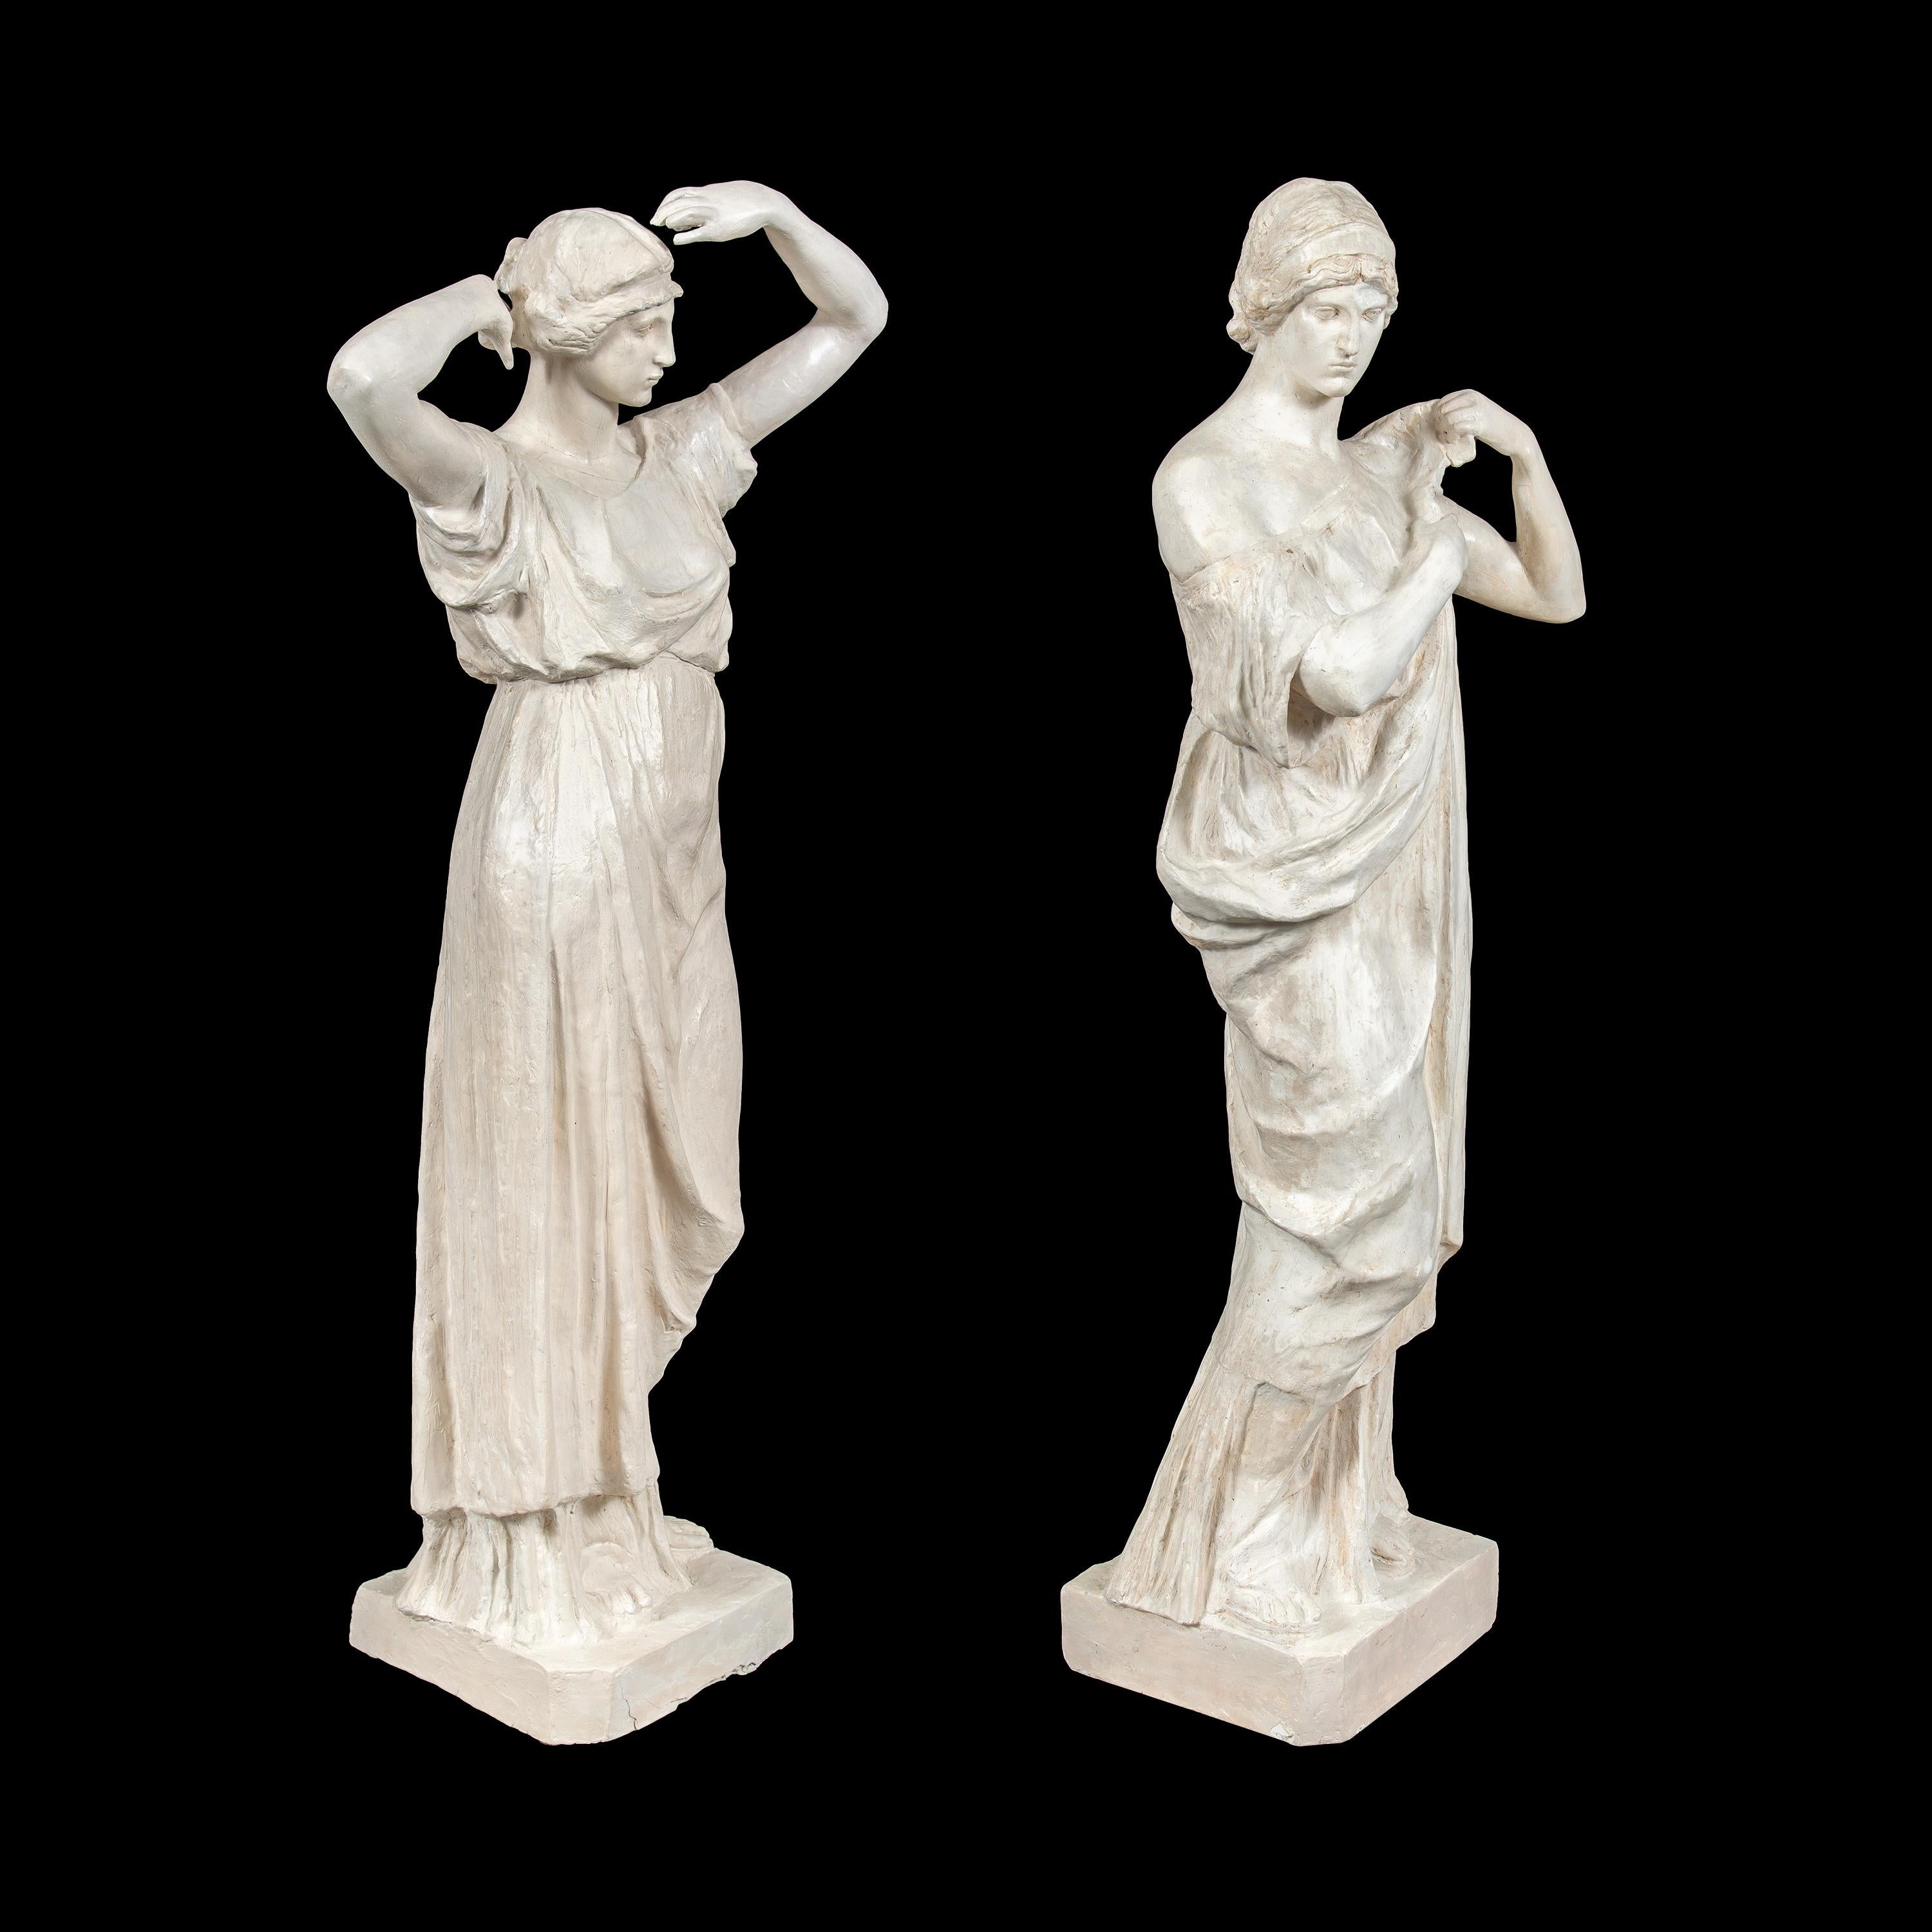 Paire de sculptures scagliola - figures romaines. Italie, 19e siècle.

51 x 26 x h 118 cm (gauche) - 41 x 28 x h 118 cm (droite).

Entièrement en scagliola.

État de conservation : En bon état général, quelques petites fissures et signes de